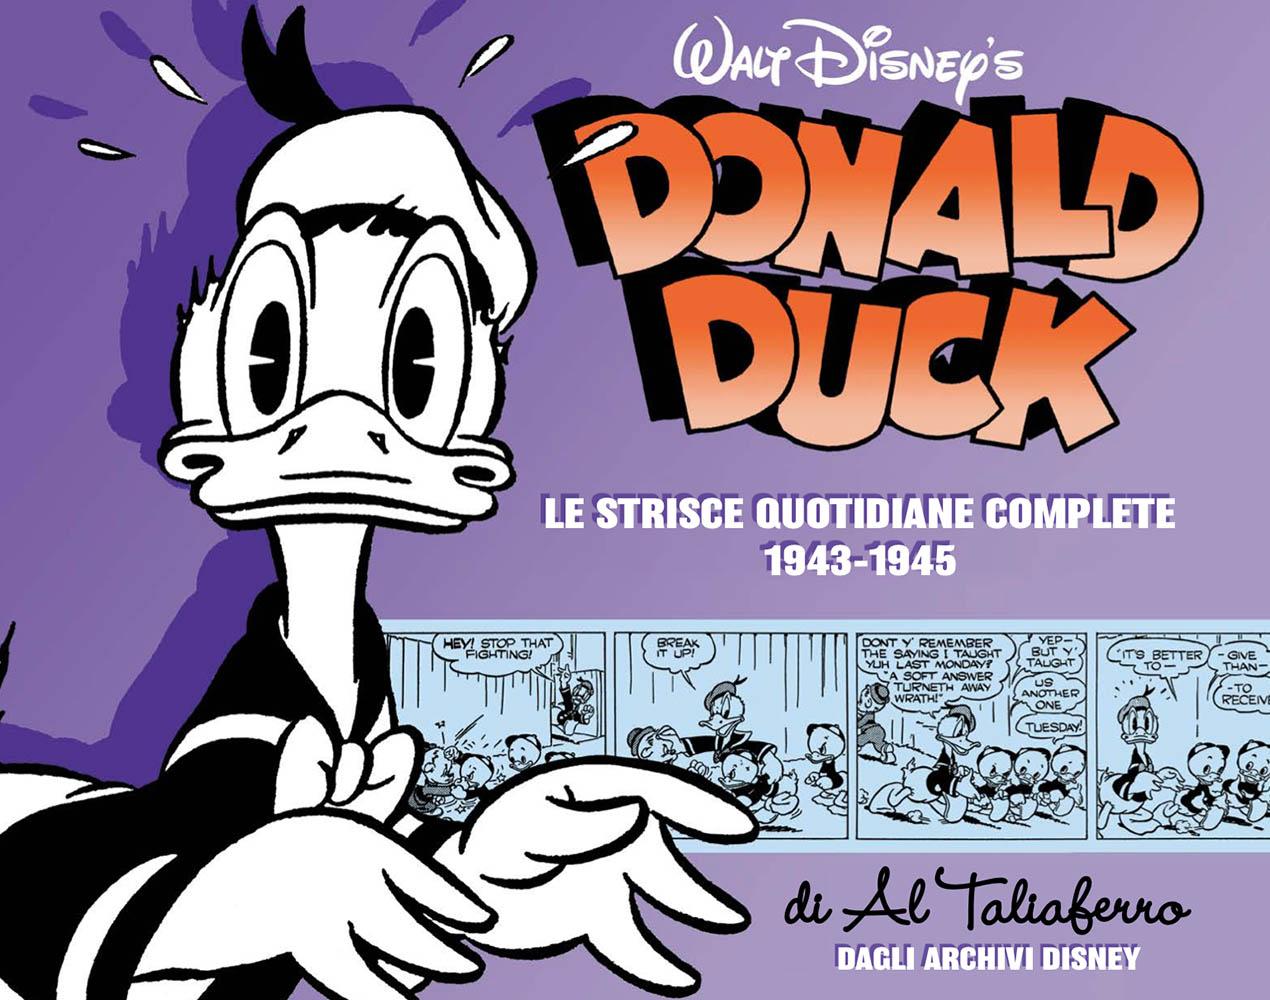 Le strisce quotidiane complete di Al Taliaferro 1943-1945 Paperino Lucca Changes 2020 novità Disney Panini Comics